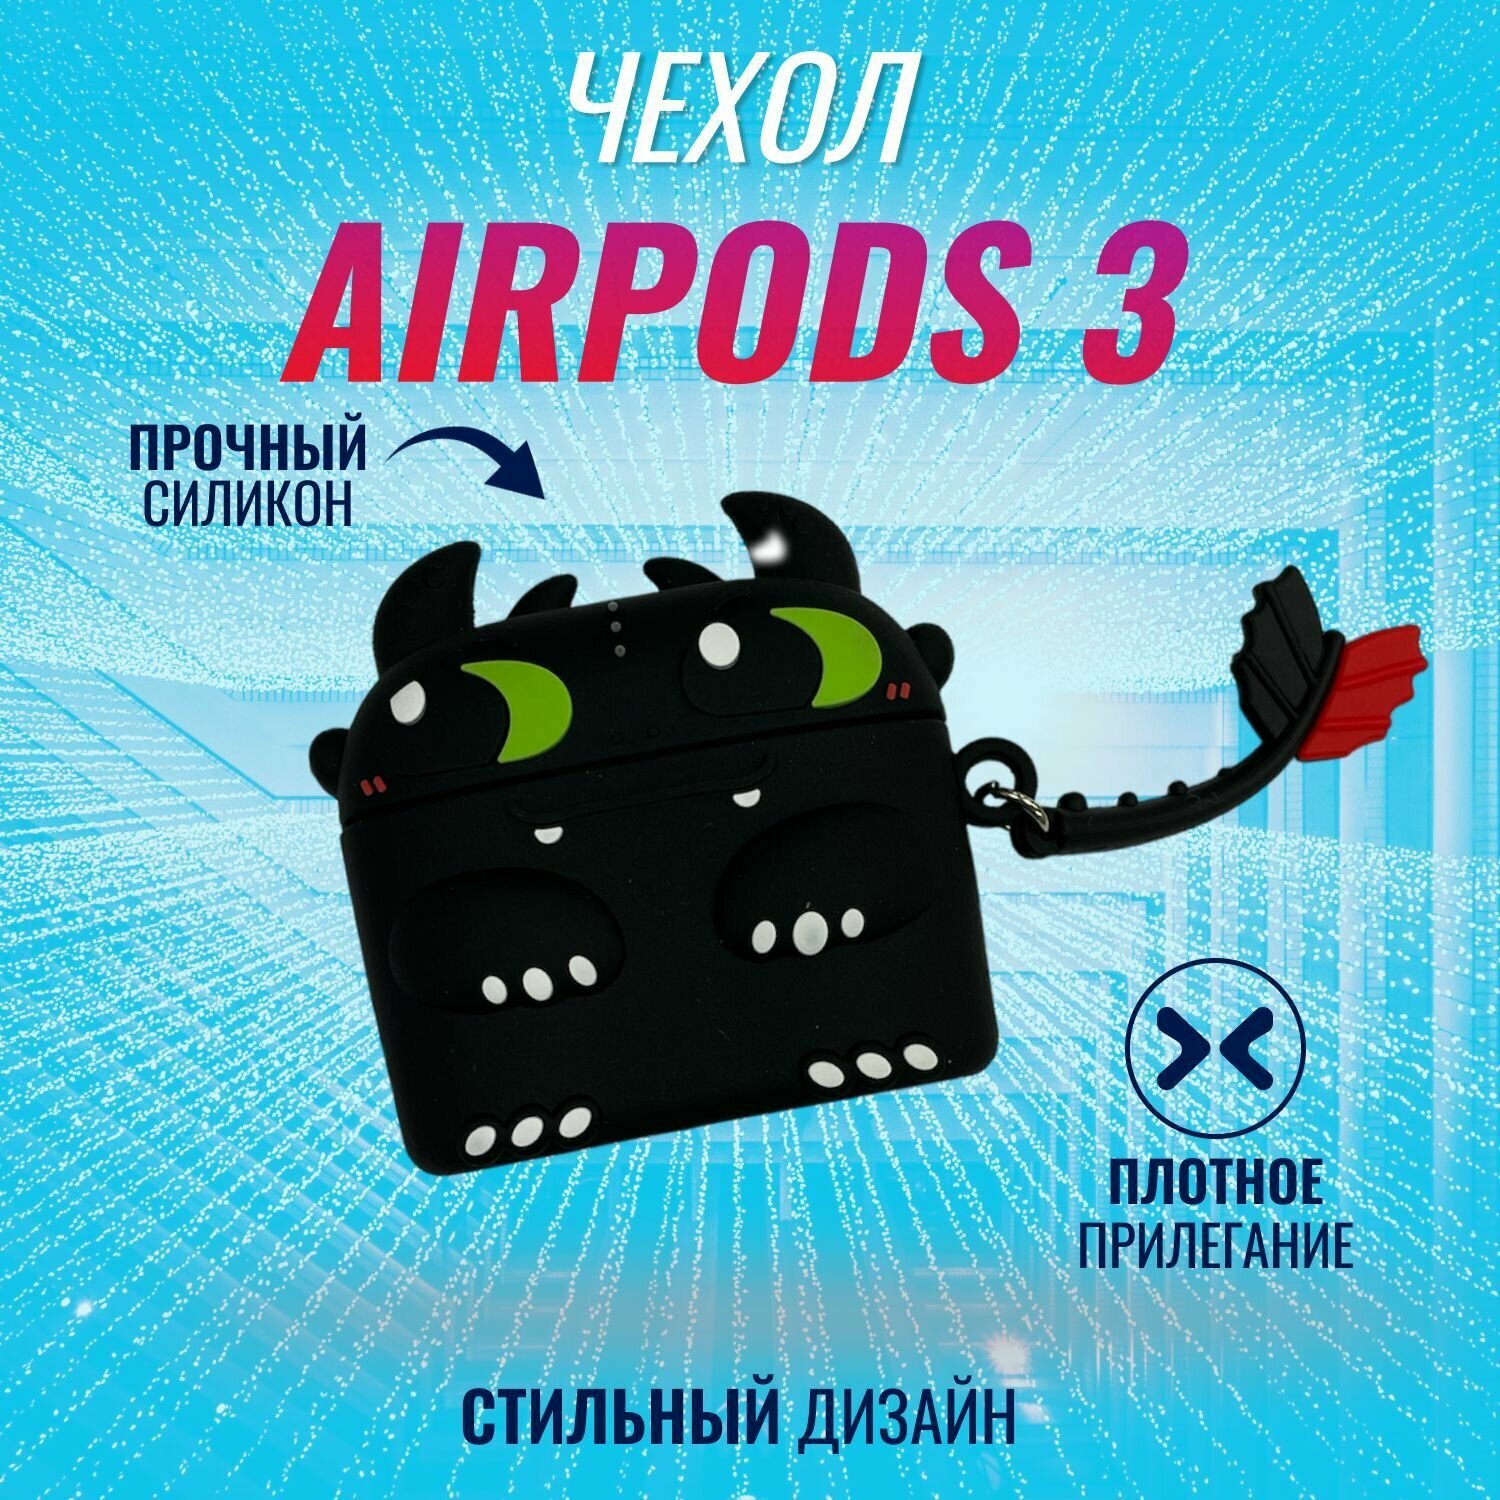 Чехол для AirPods 3 (Беззубик)